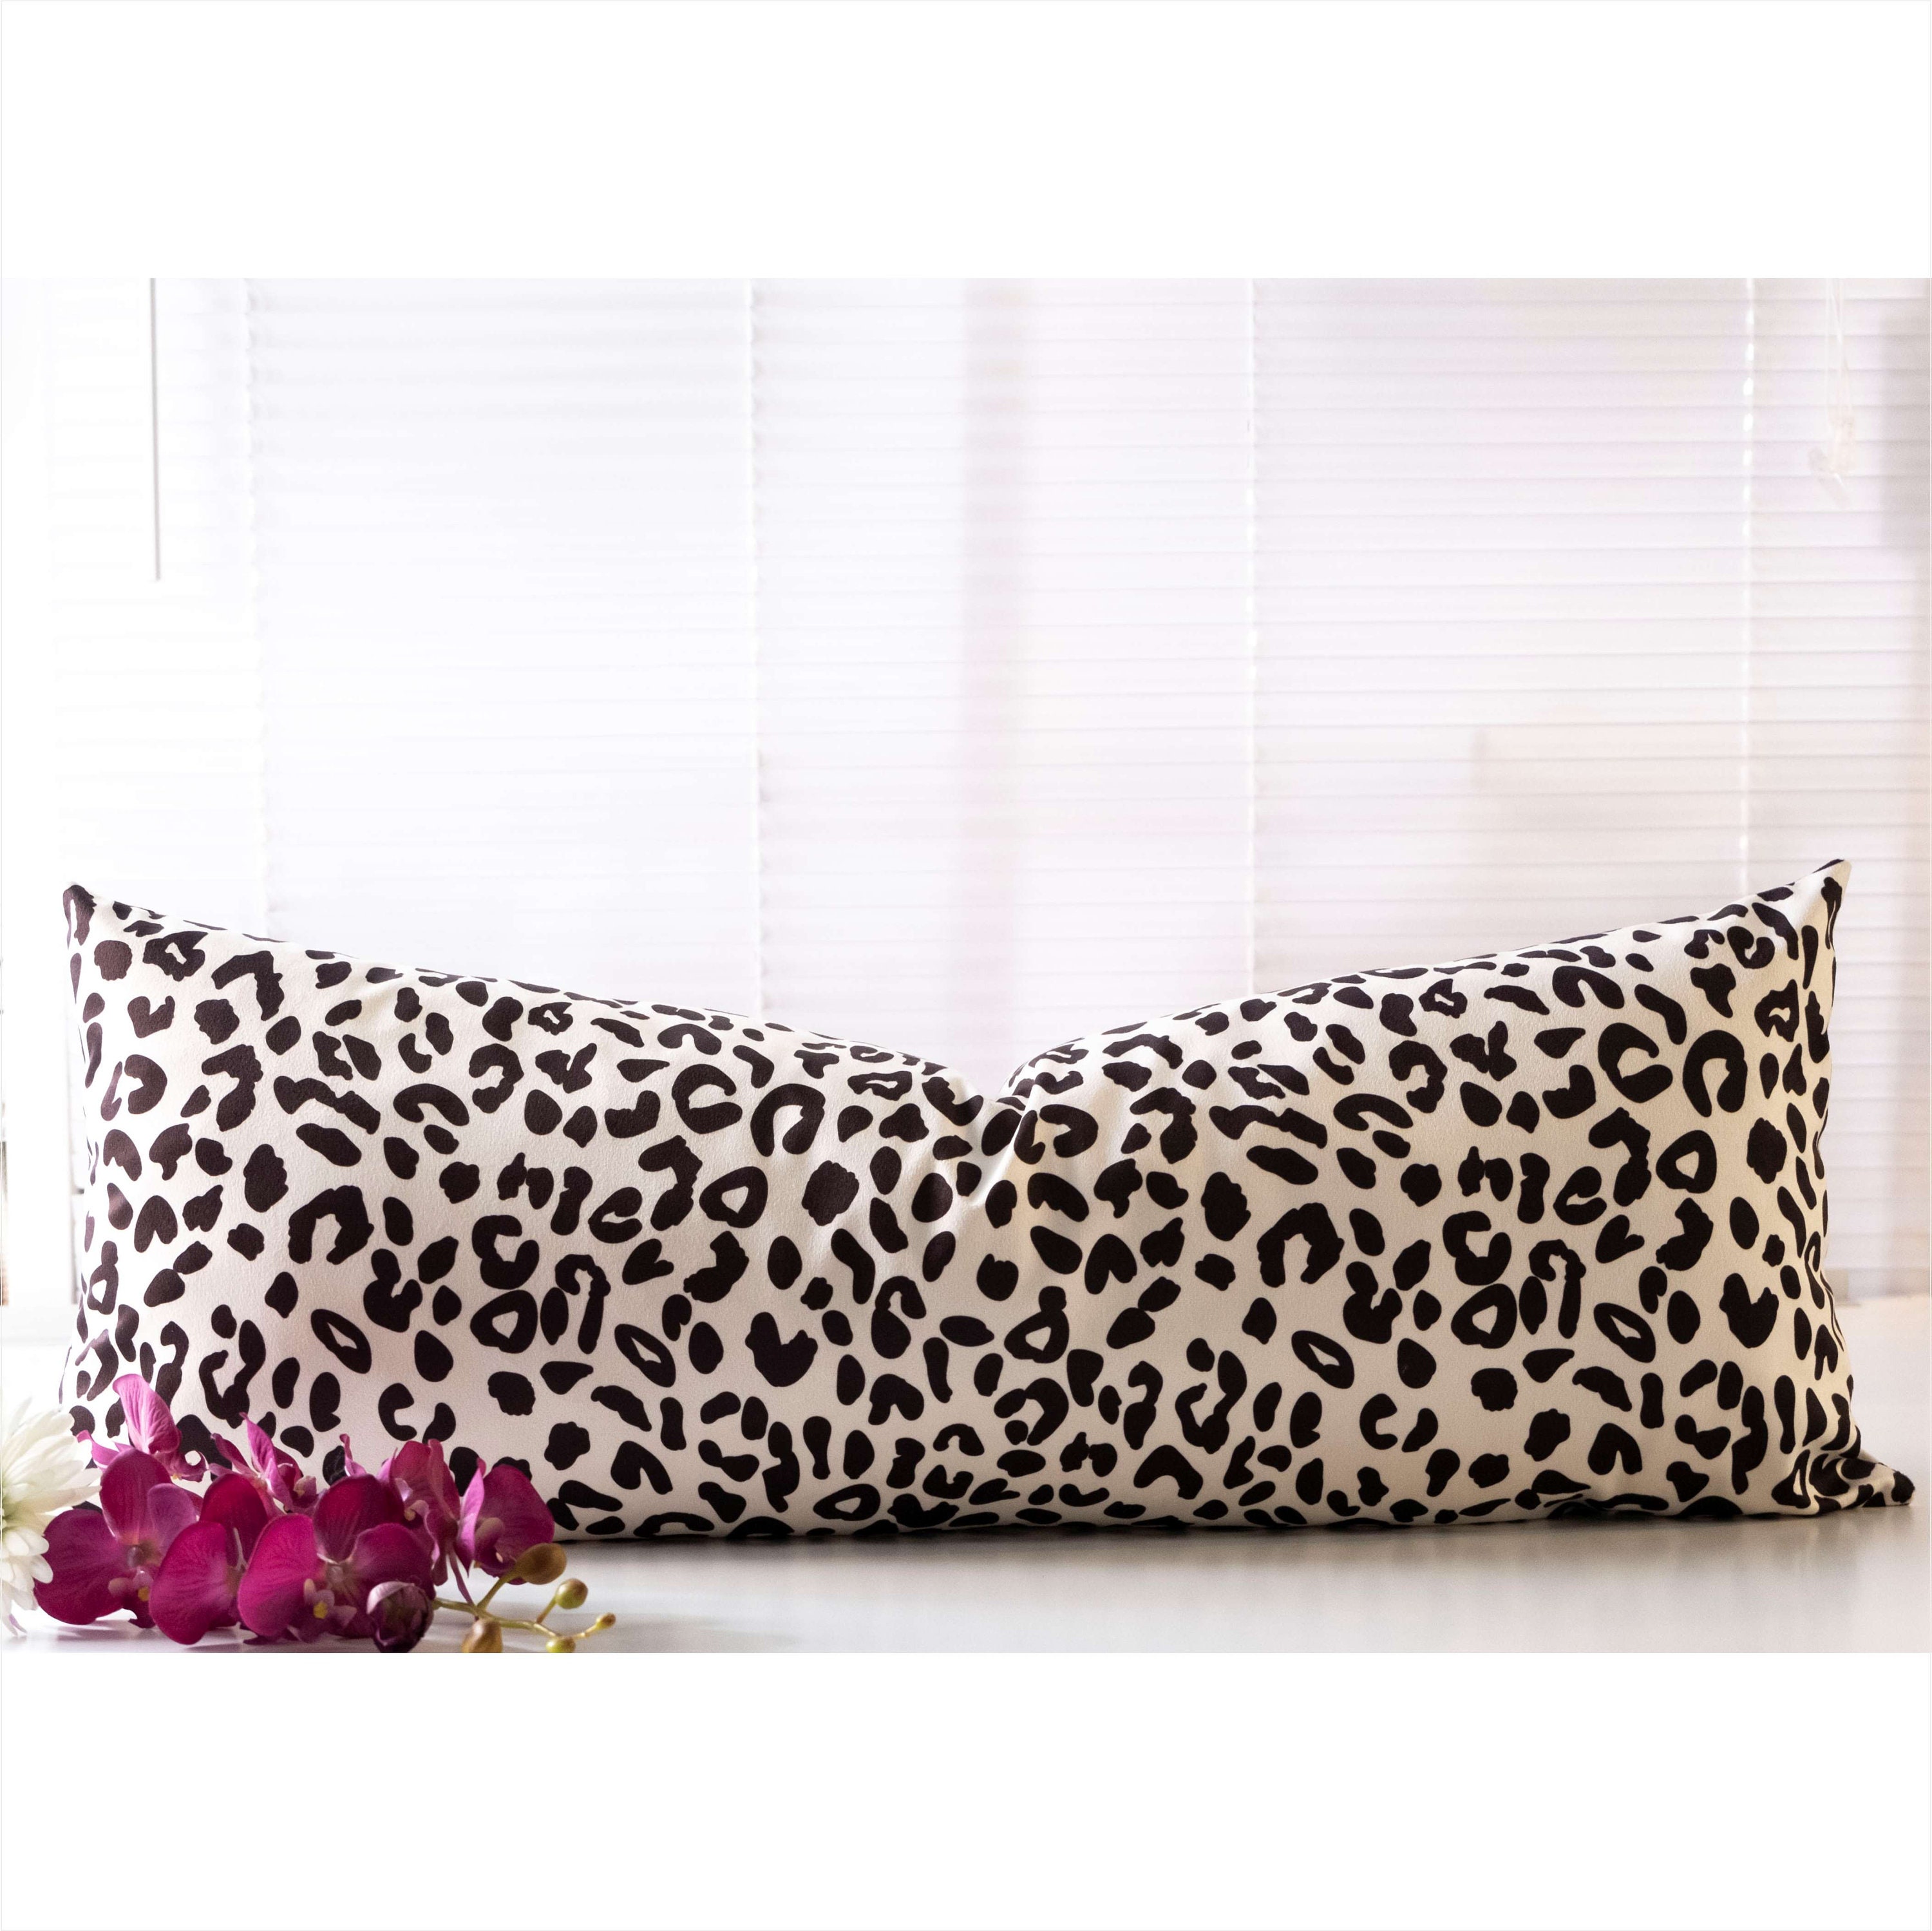 Entua Snow Leopard Cheetah Fur Lumbar Throw Pillows Covers 12x20 Soft  Plush Animal Skin Pattern Texture Couch Pillow Cover Wildlife Pillowcase